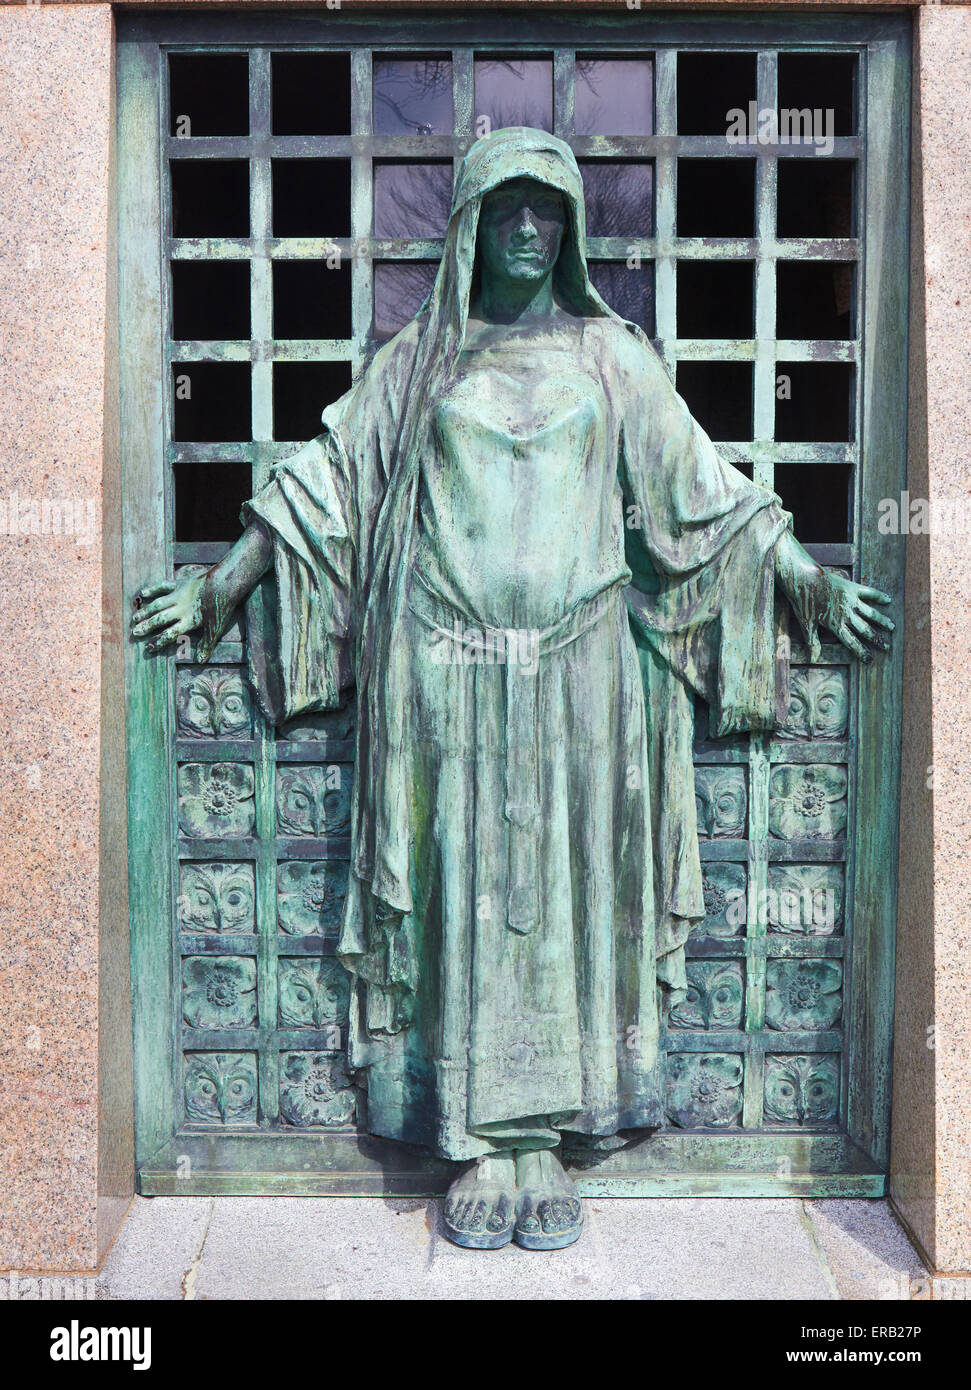 Eine verhüllte Gestalt umgeben von geschnitzte Eule Flächen schützen den Eingang zum Grab Friedhof Pere Lachaise Paris Frankreich Europa Stockfoto